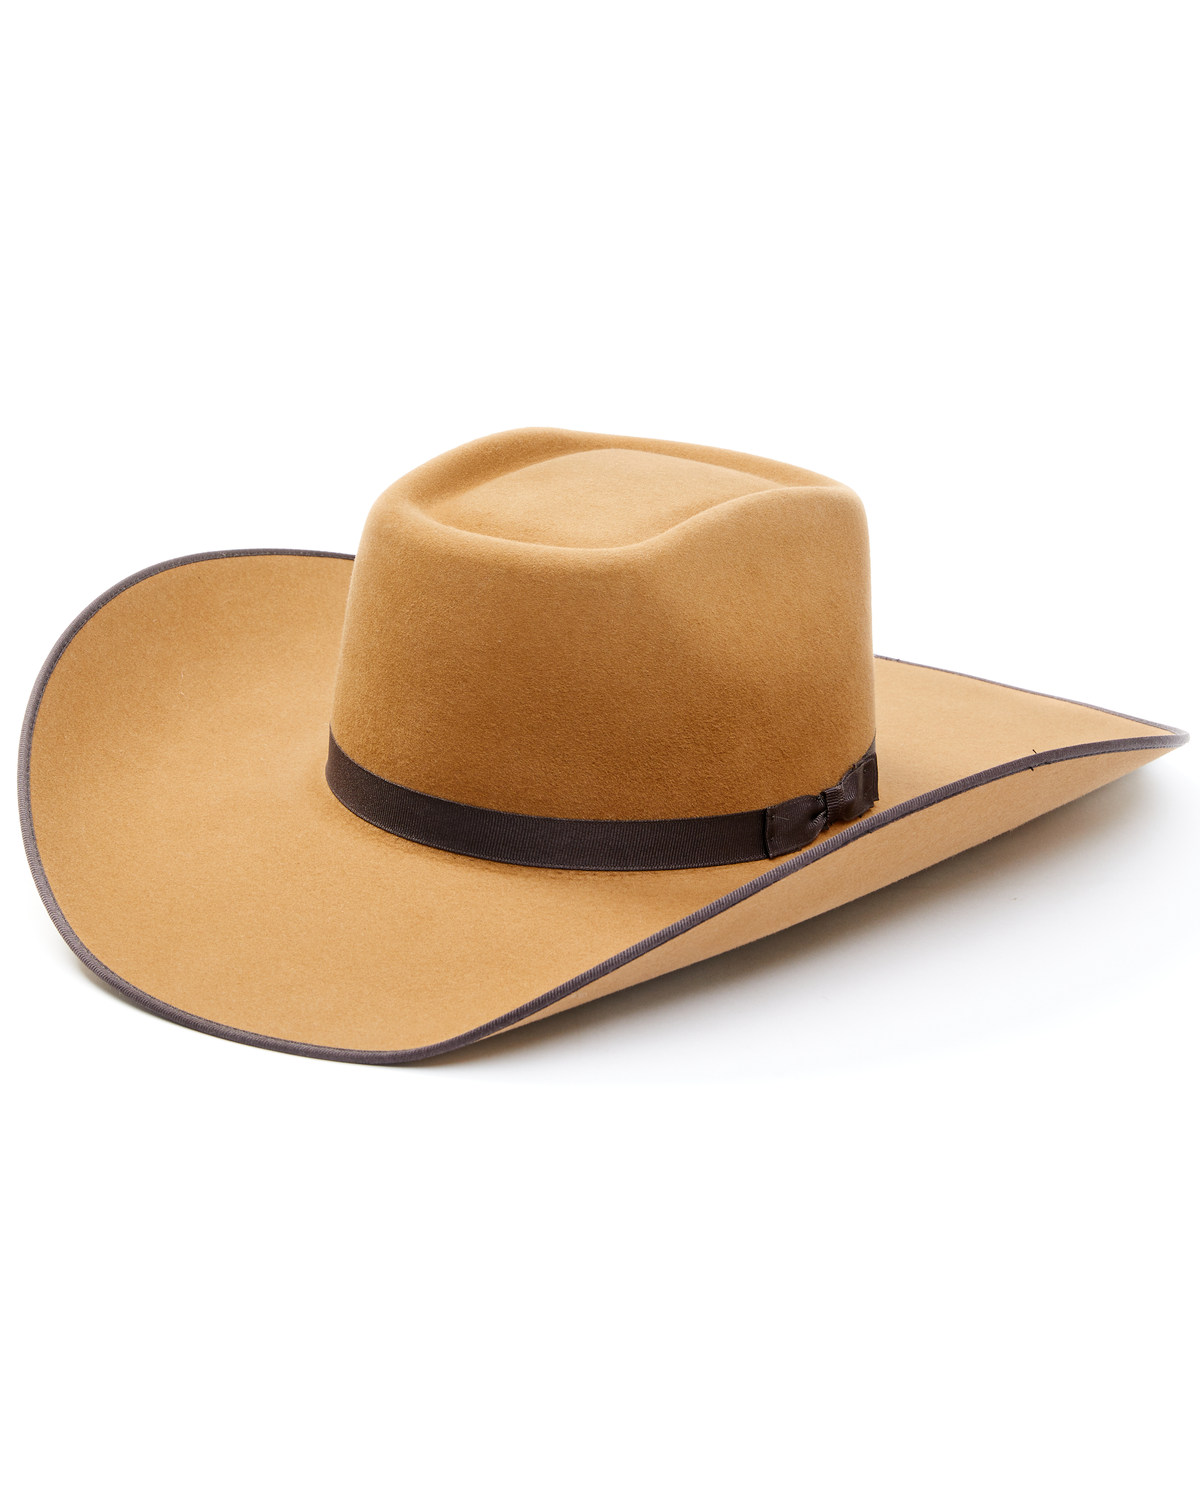 Cody James 5X Felt Cowboy Hat